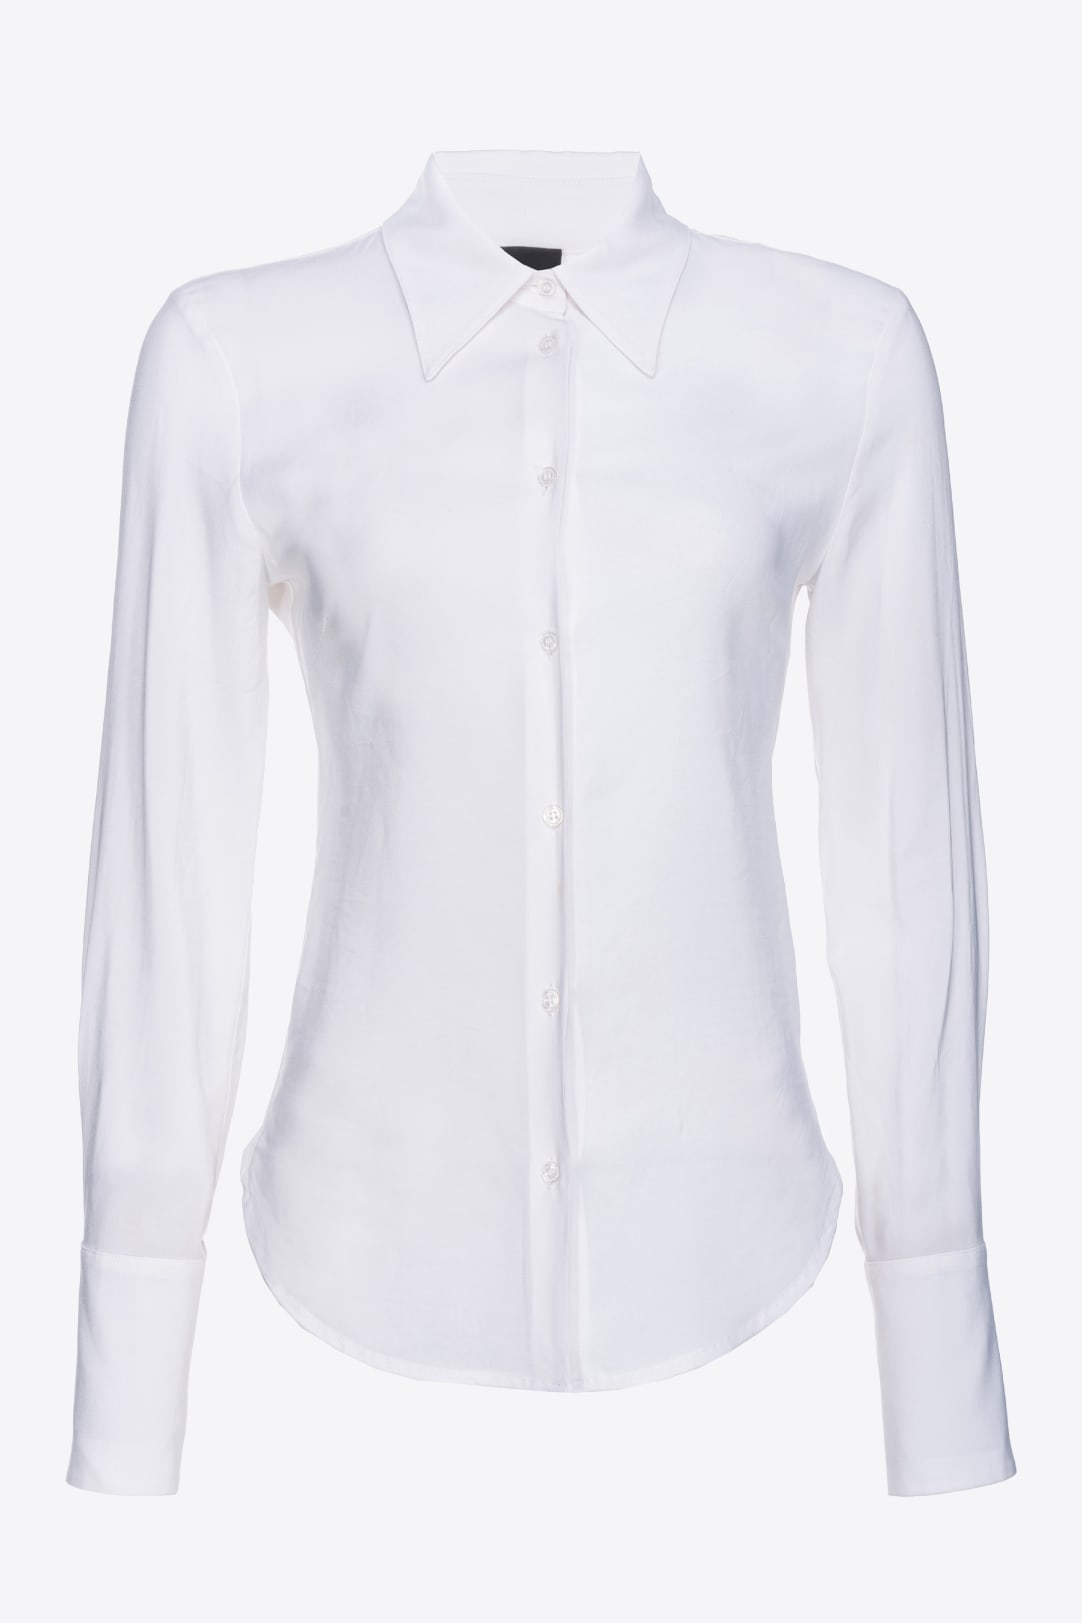 Promoción modelo-de-blusas-para-dama, modelo-de-blusas-para-dama a la  venta, modelo-de-blusas-para-dama promocional